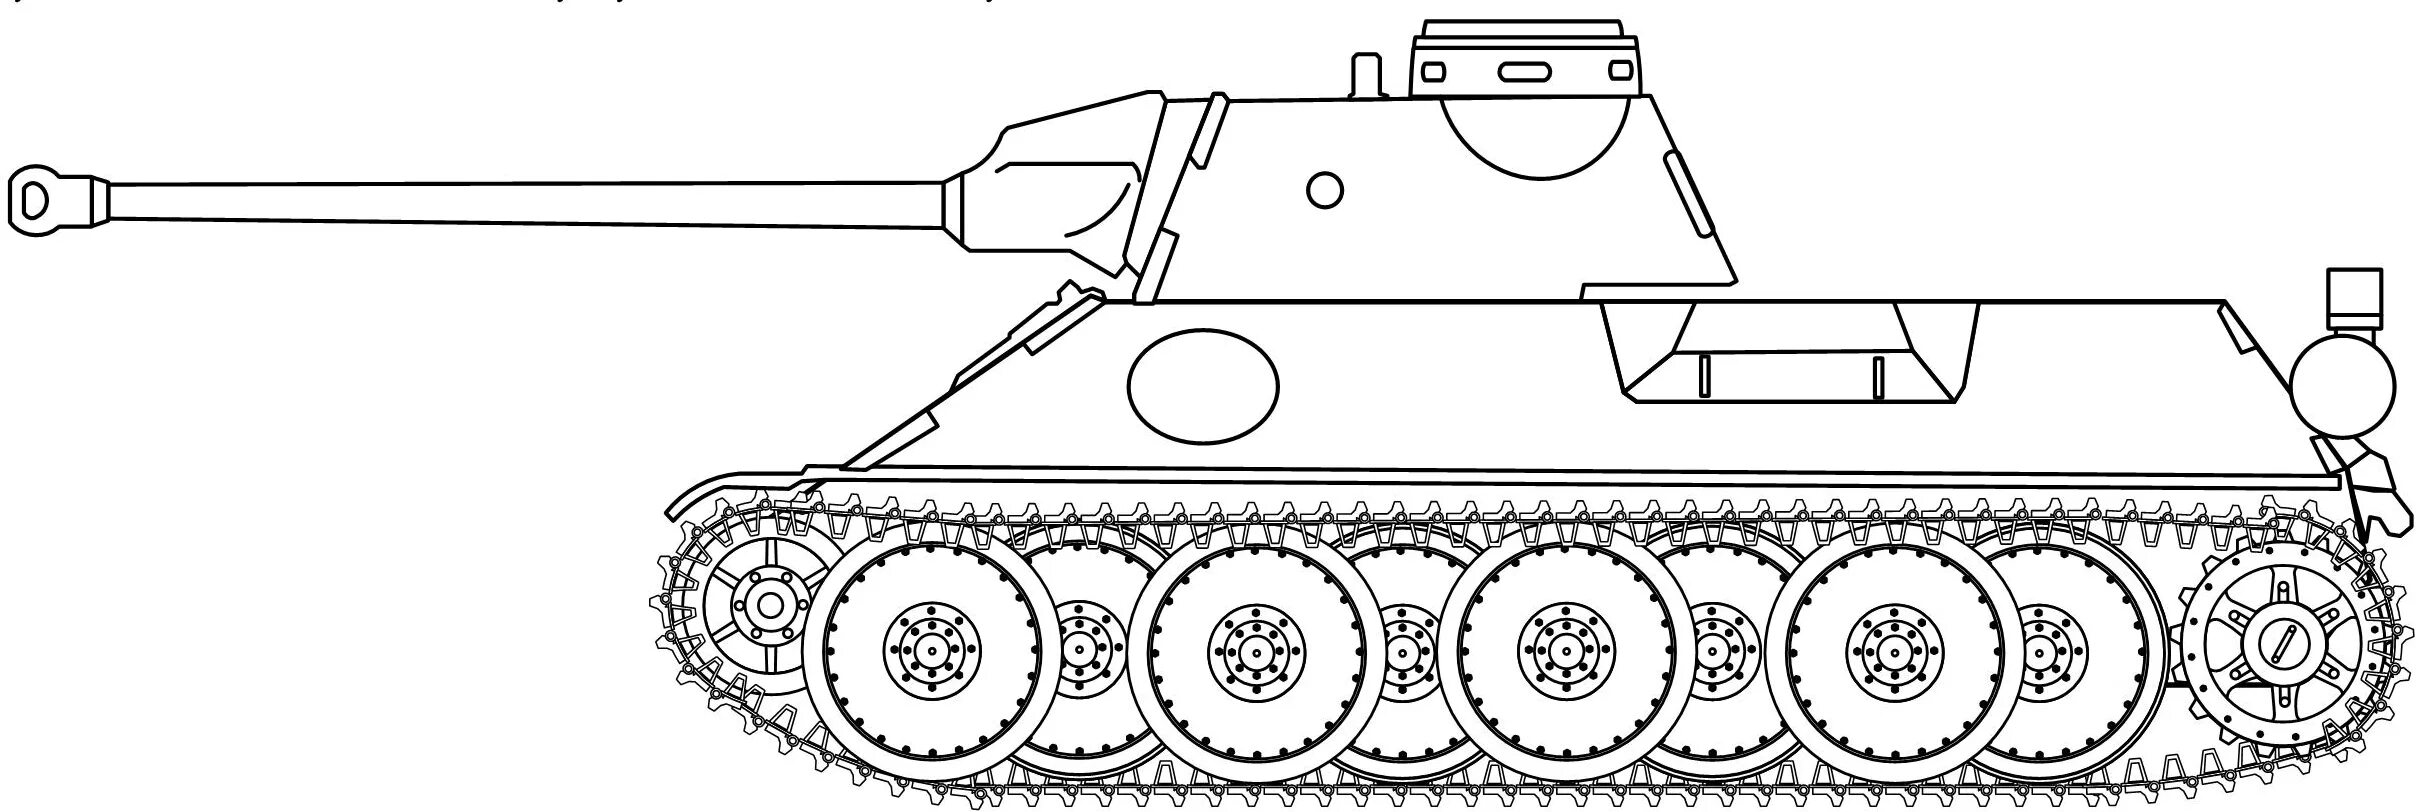 Шаблоны легких танков. Танк ВК 30.02 Д. Танк кв 4 сбоку. Танк ВК 30.01 Д чертеж. ВК 30 танк.